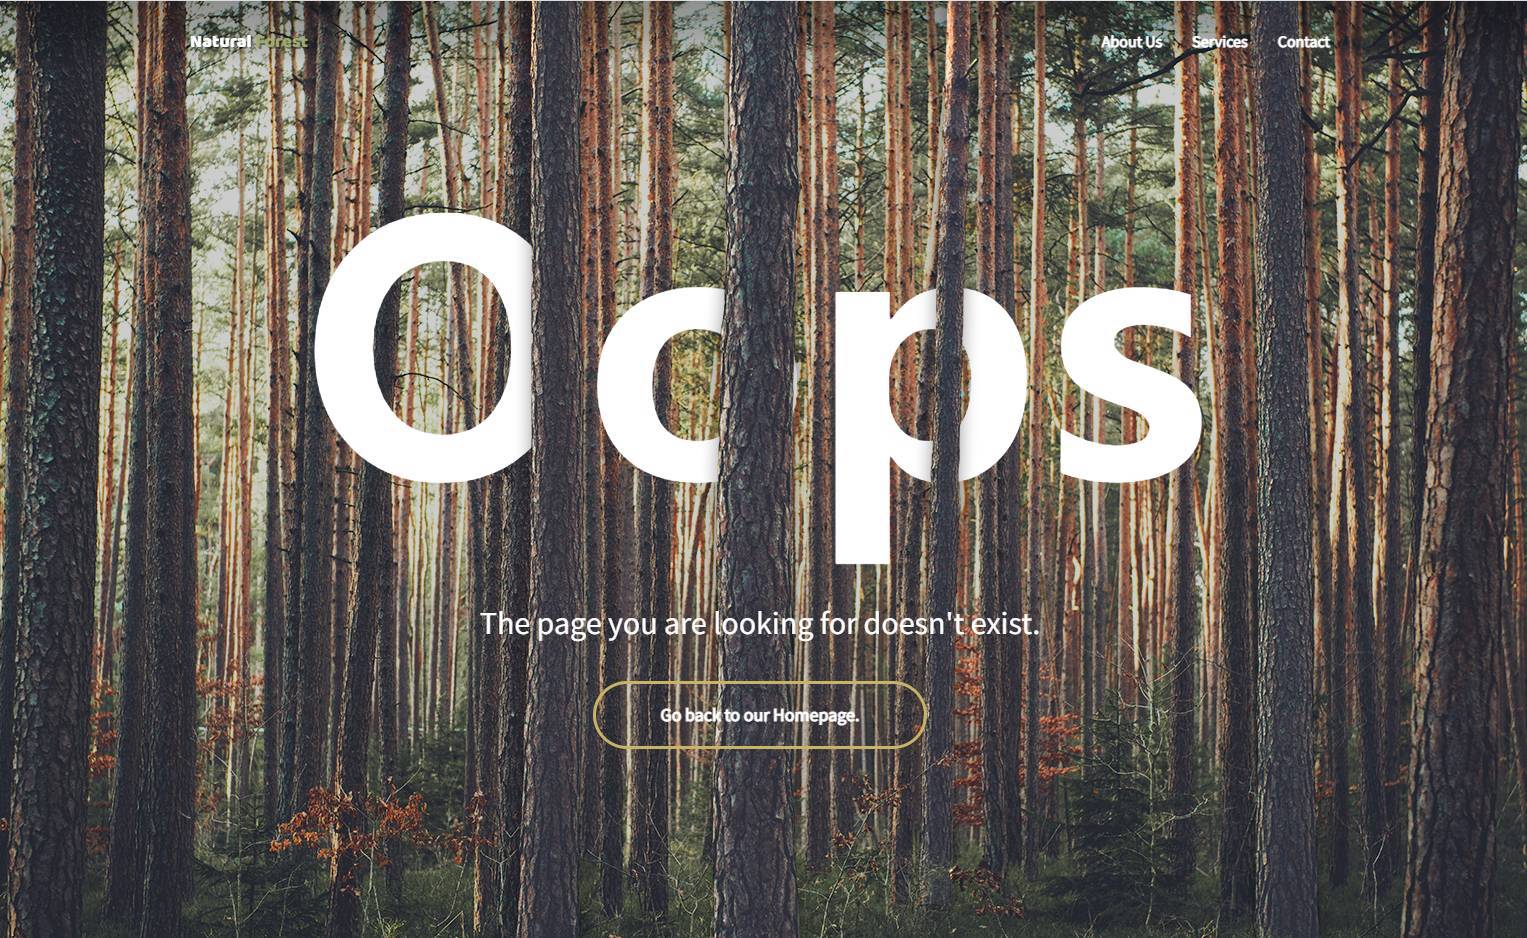 全屏天然树林404错误页面